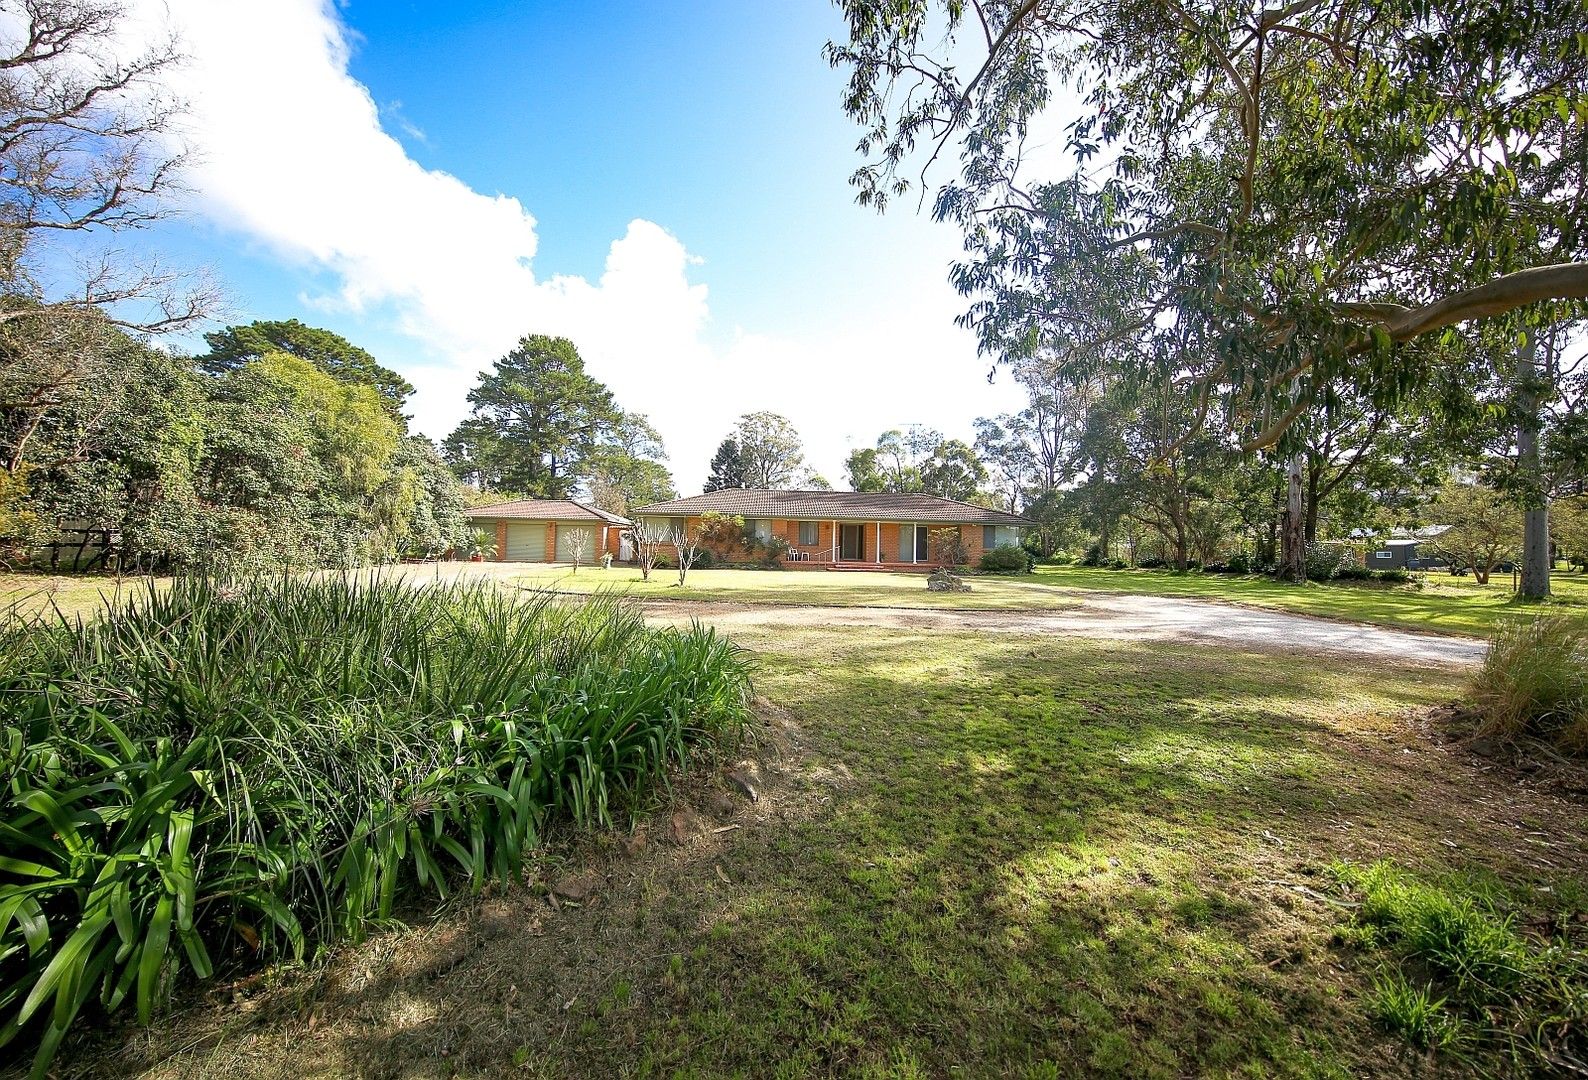 4 bedrooms Acreage / Semi-Rural in 50 Durham St DOUGLAS PARK NSW, 2569